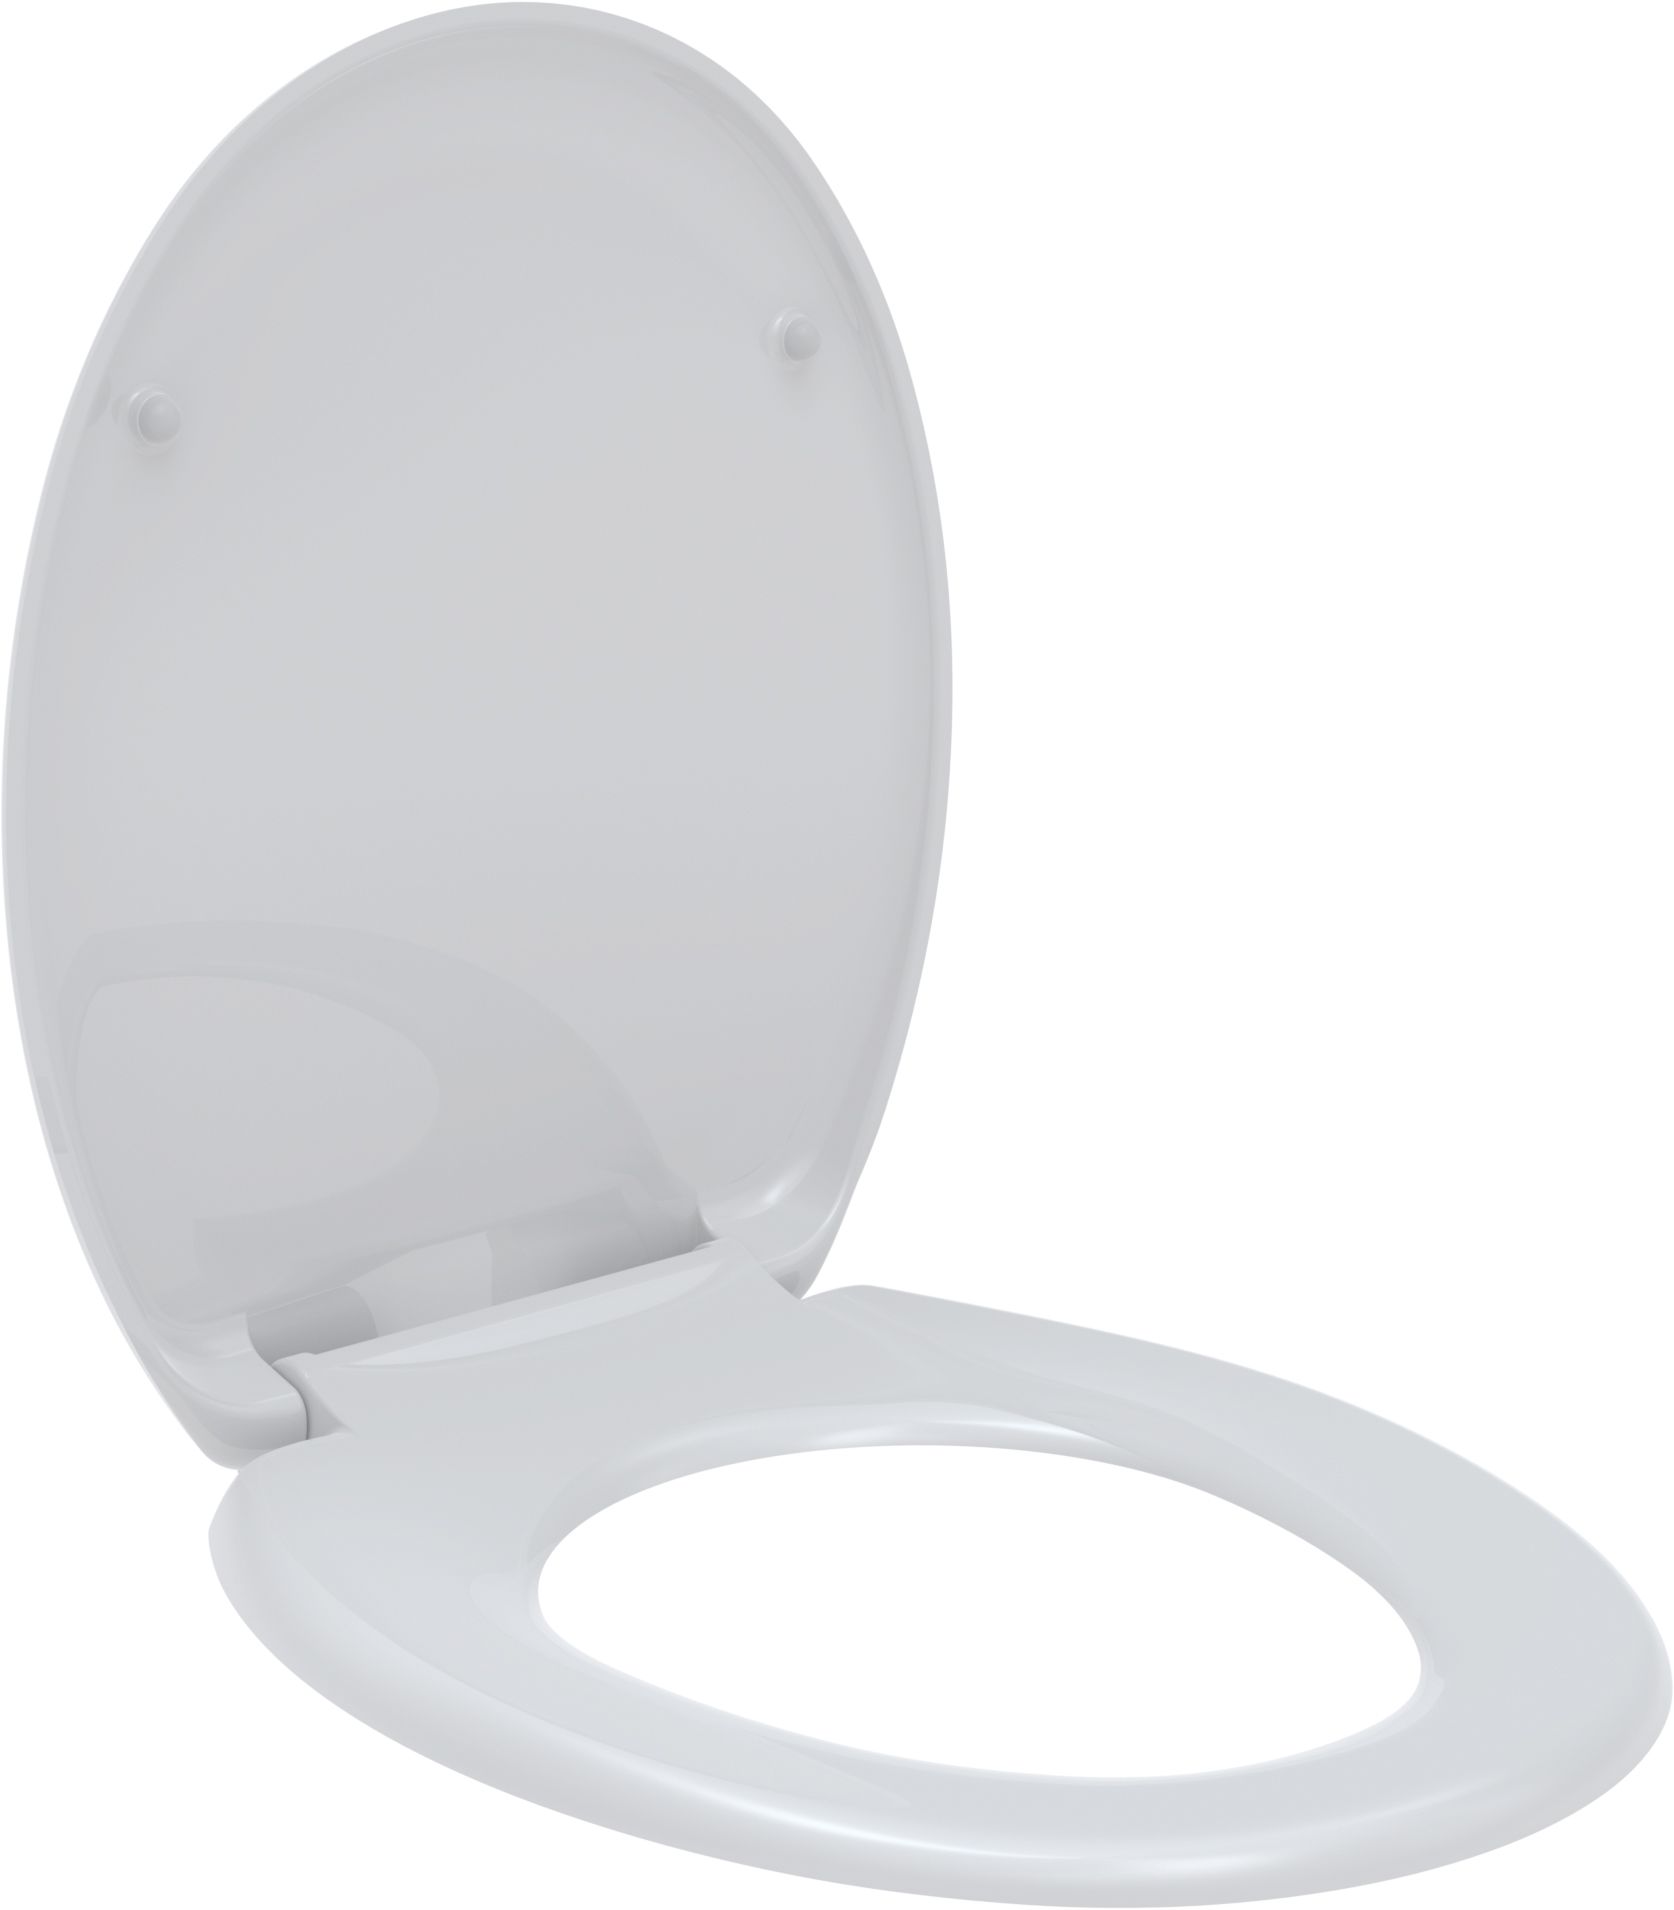 Toilet seat Centaur, white